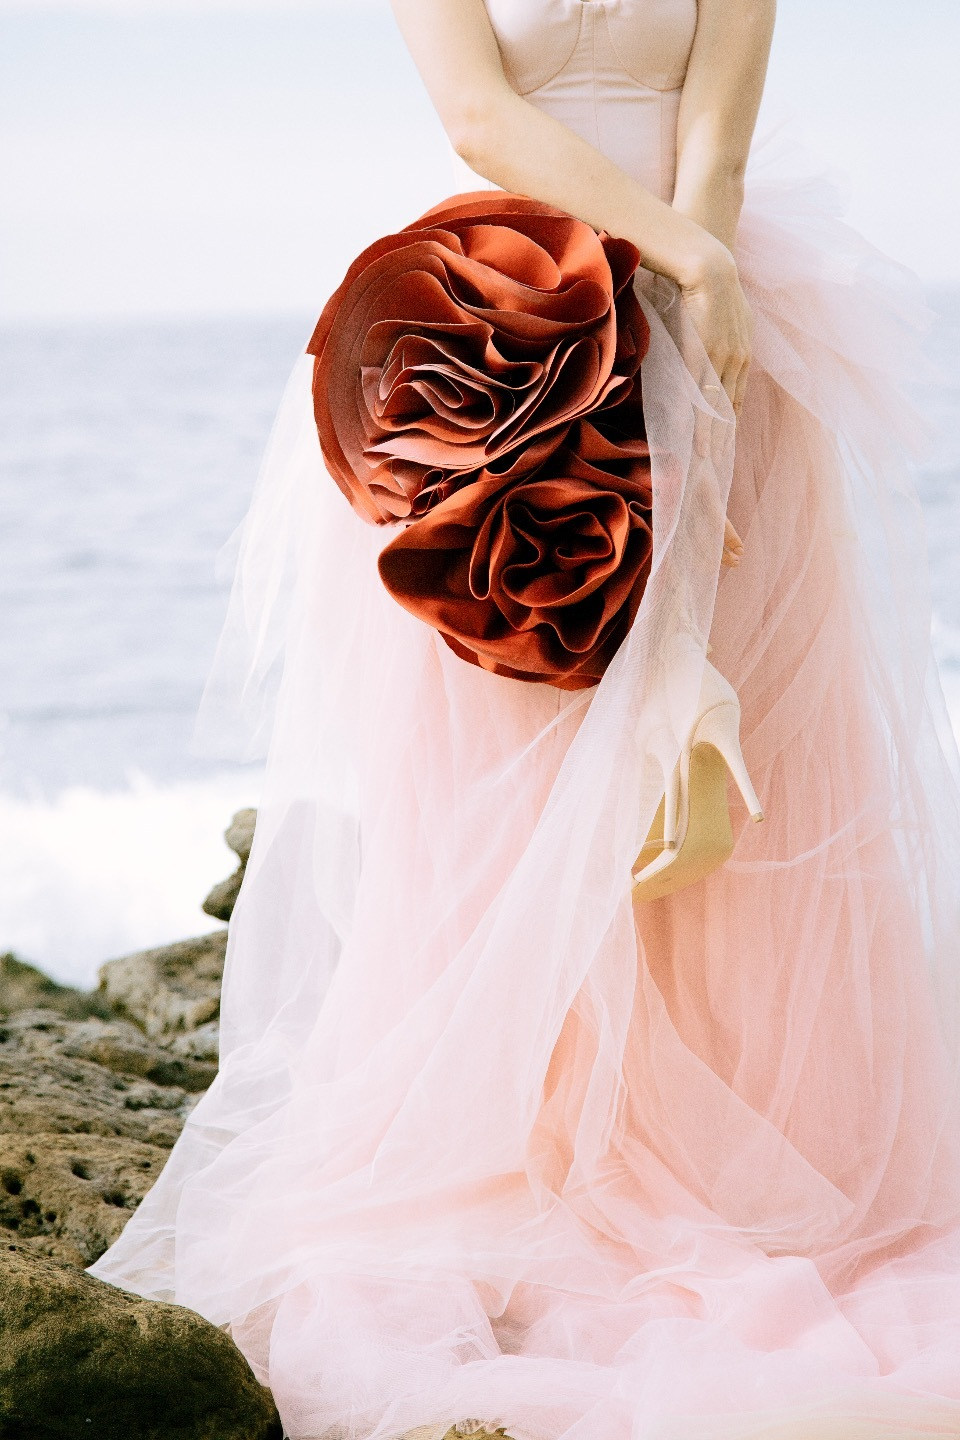 ФОТО ИЗ СТАТЬИ: Нежность Лазурного берега: свадьба во Франции